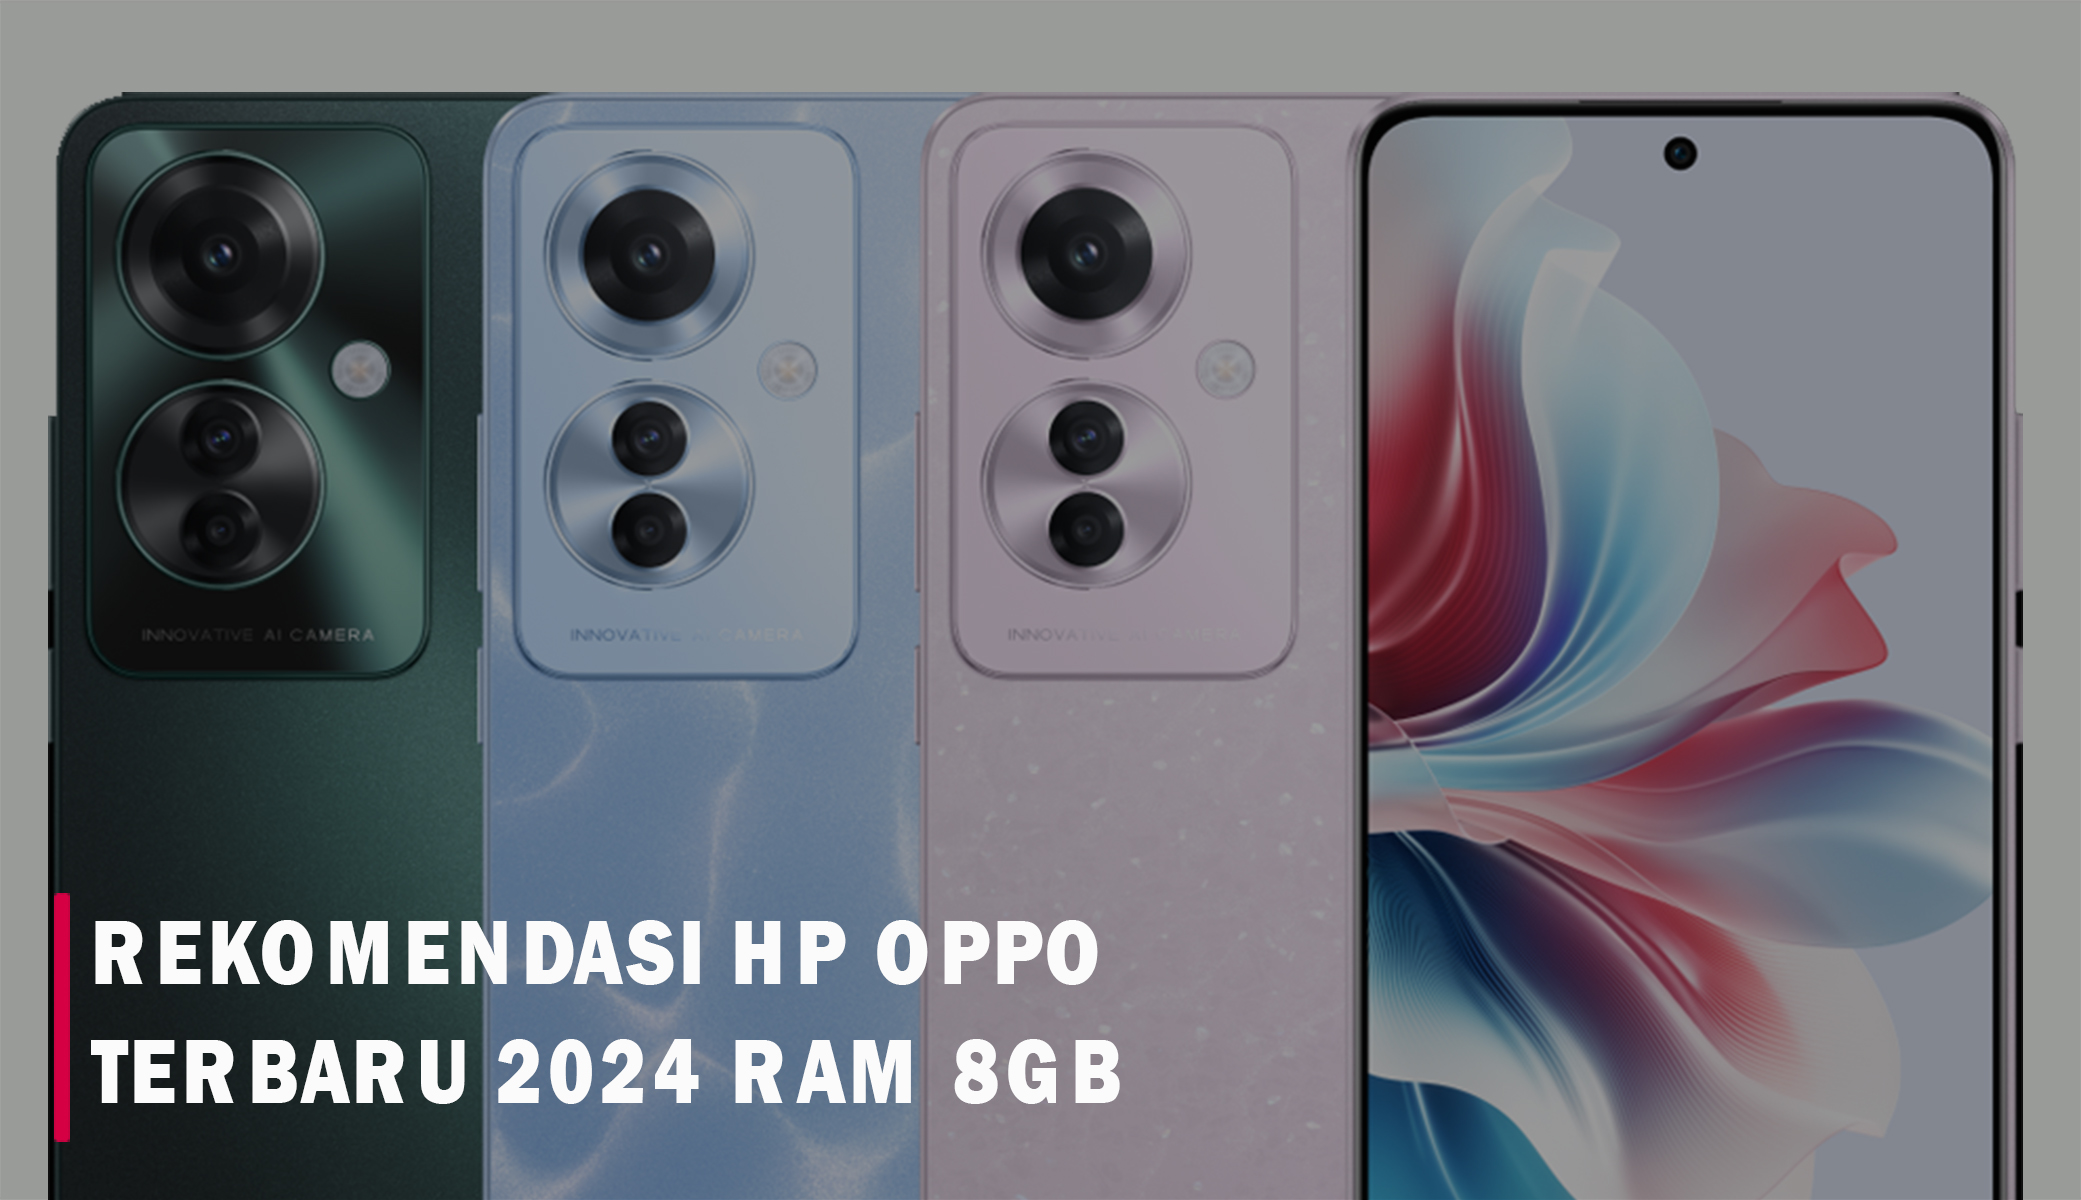 RAM 8GB! Ini 10 Rekomendasi Hp Oppo Terbaru 2024 yang Punya Spesifikasi Gacor